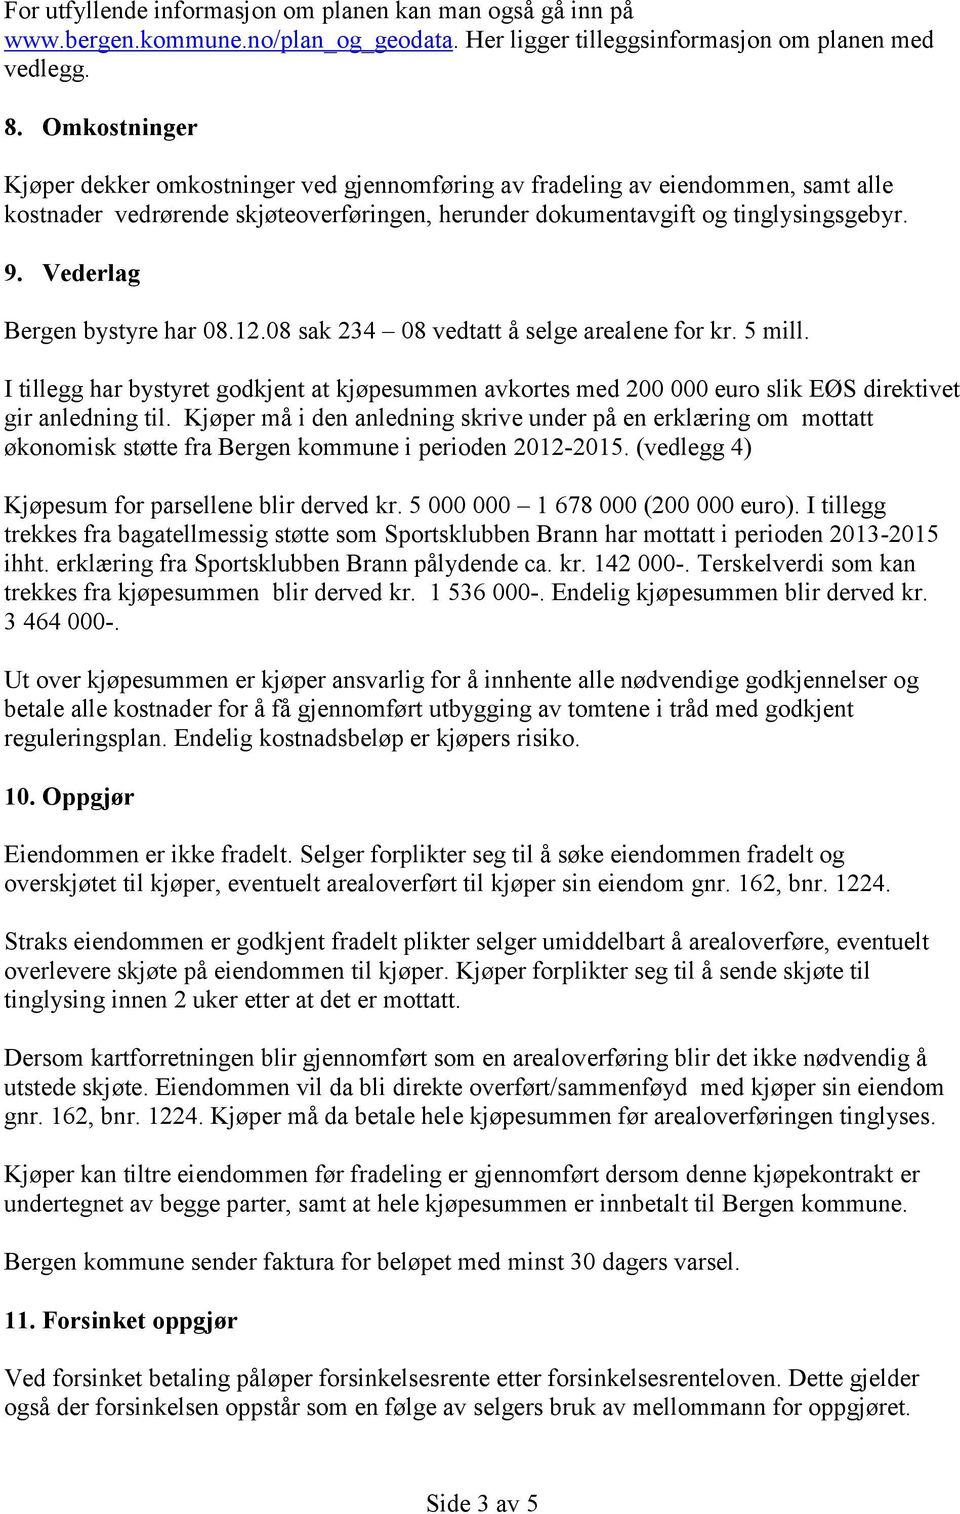 Vederlag Bergen bystyre har 08.12.08 sak 234 08 vedtatt å selge arealene for kr. 5 mill. I tillegg har bystyret godkjent at kjøpesummen avkortes med 200 000 euro slik EØS direktivet gir anledning til.